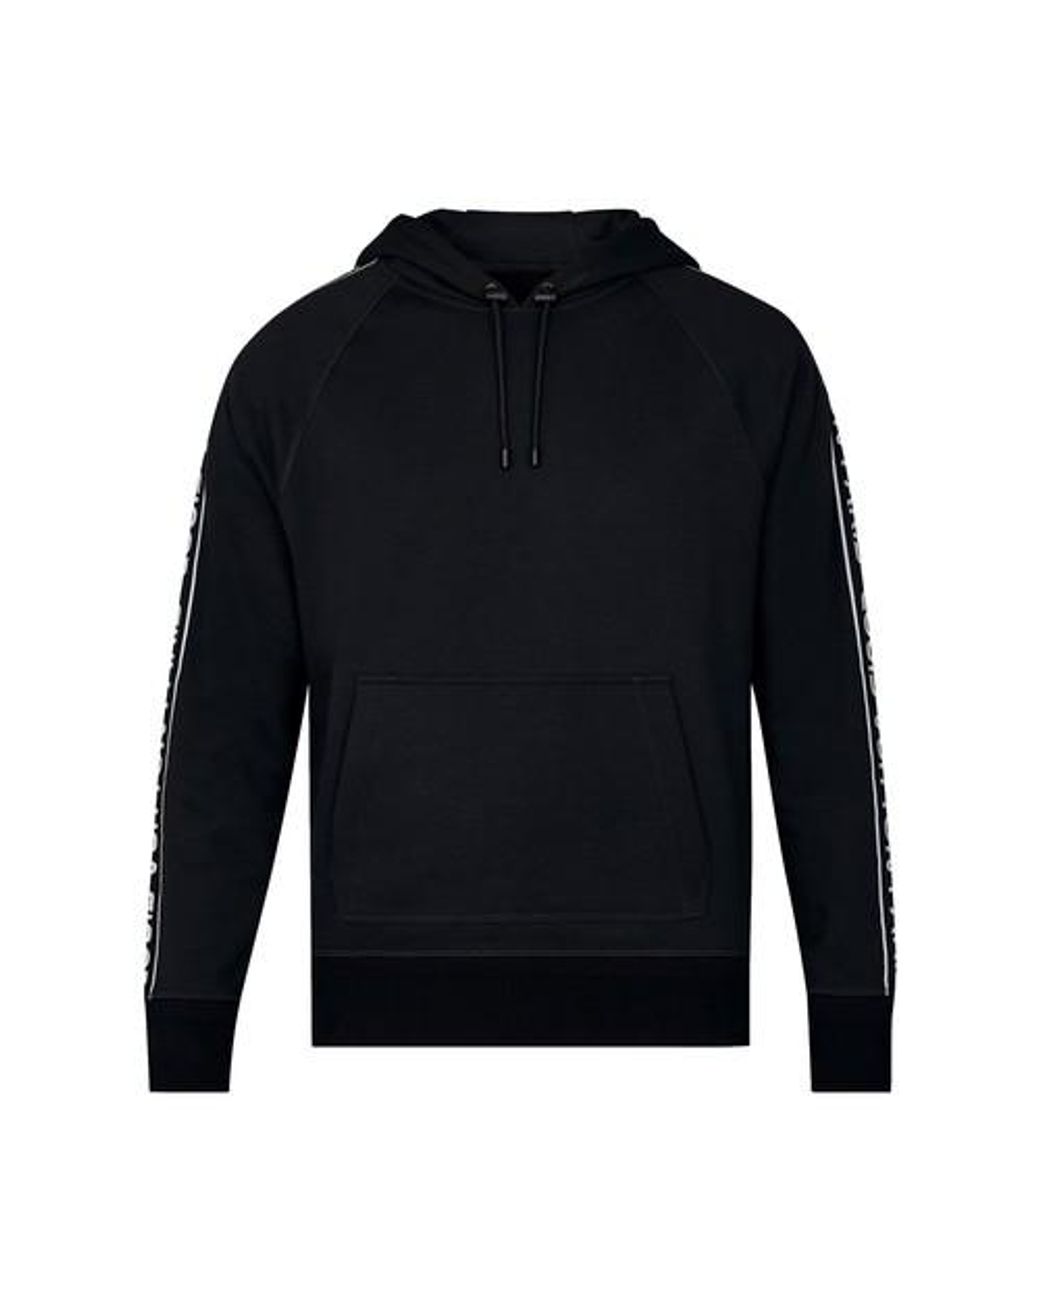 Louis Vuitton Hoody Hoodie Sweater Hooded Black L Sweatshirt - clothing &  accessories - by owner - apparel sale 